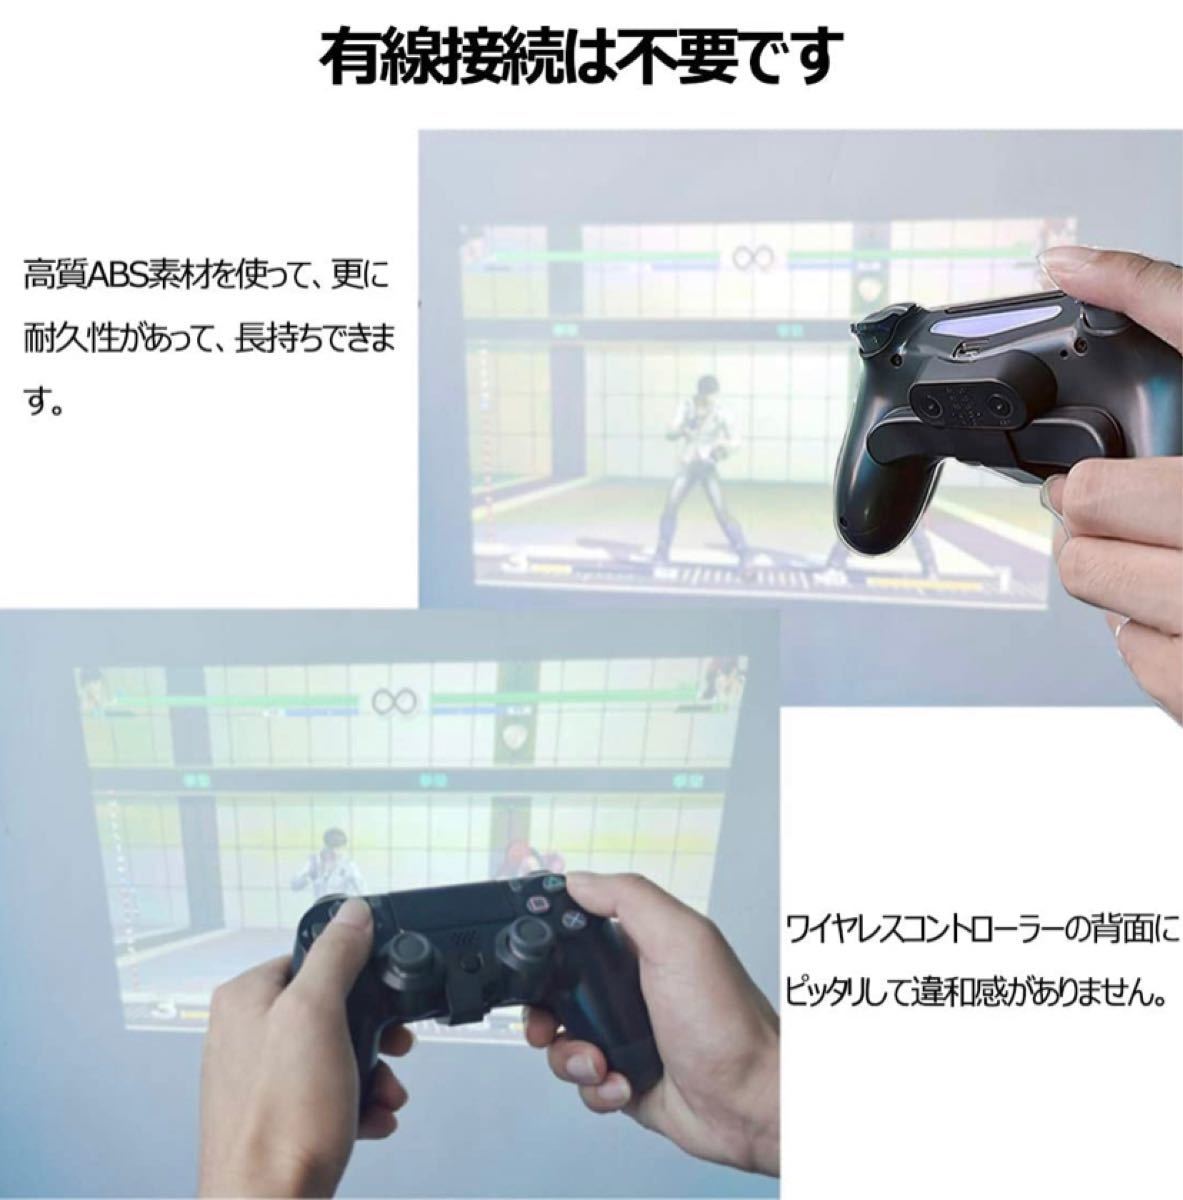 PS4 背面ボタンアタッチメント Chayoo 背面パドル DUALSHOCK4